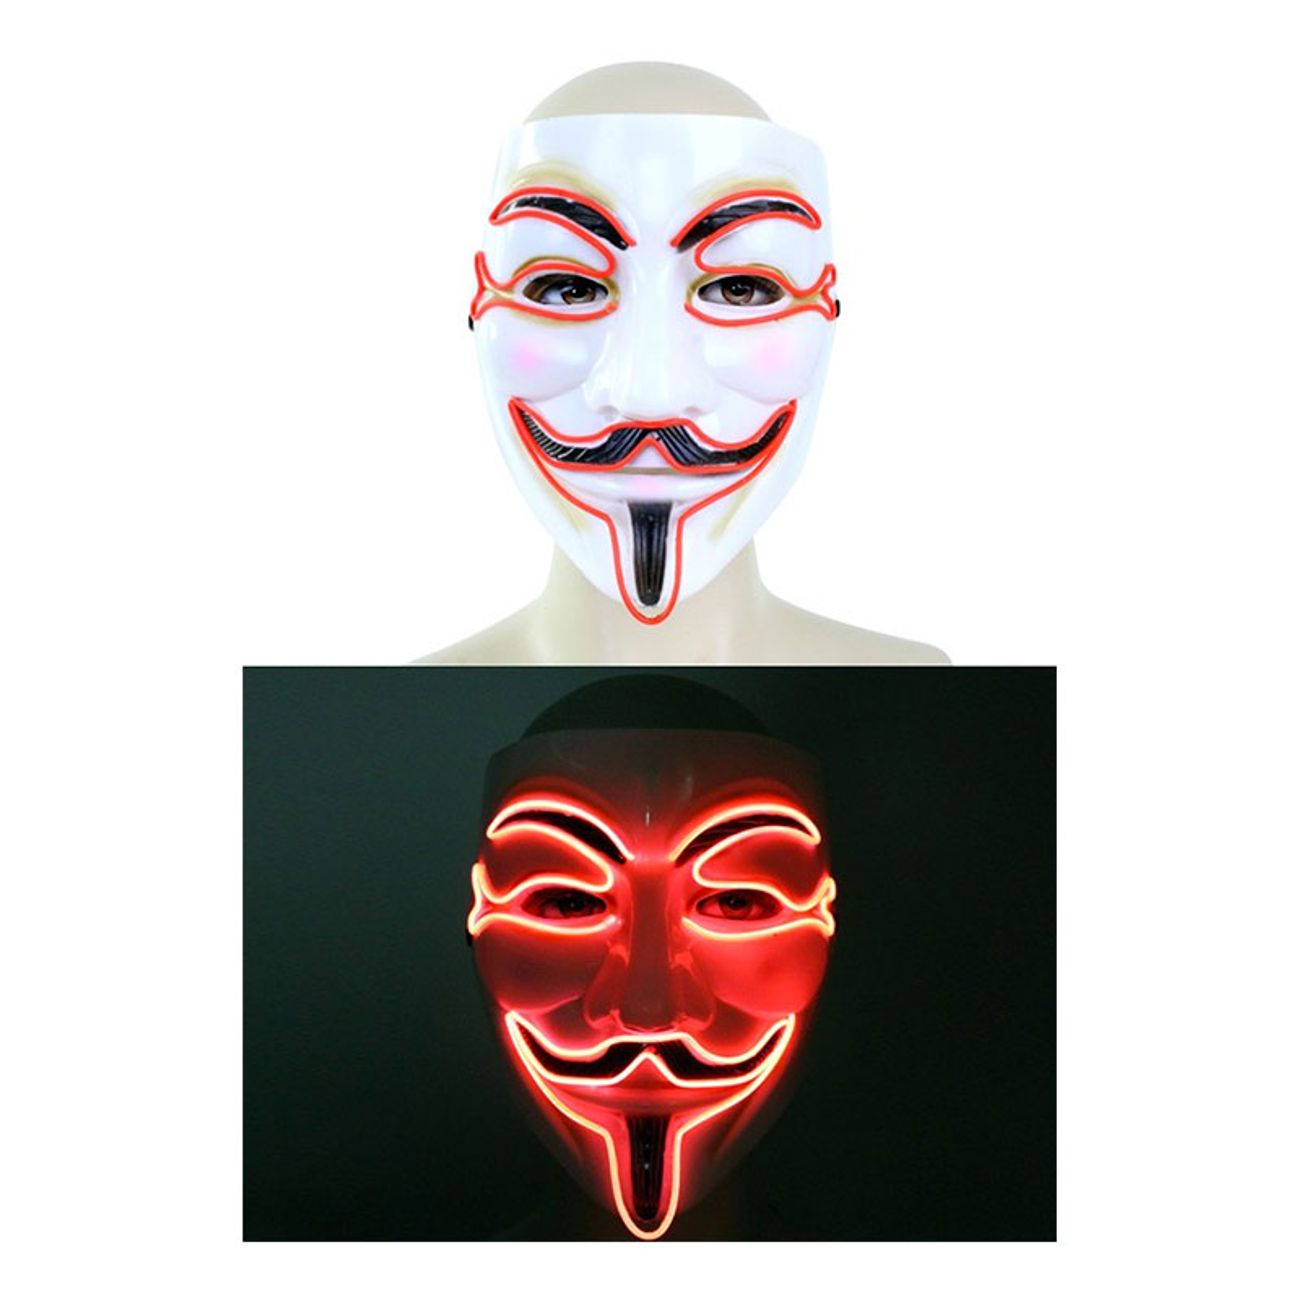 v-for-vendetta-led-mask-1